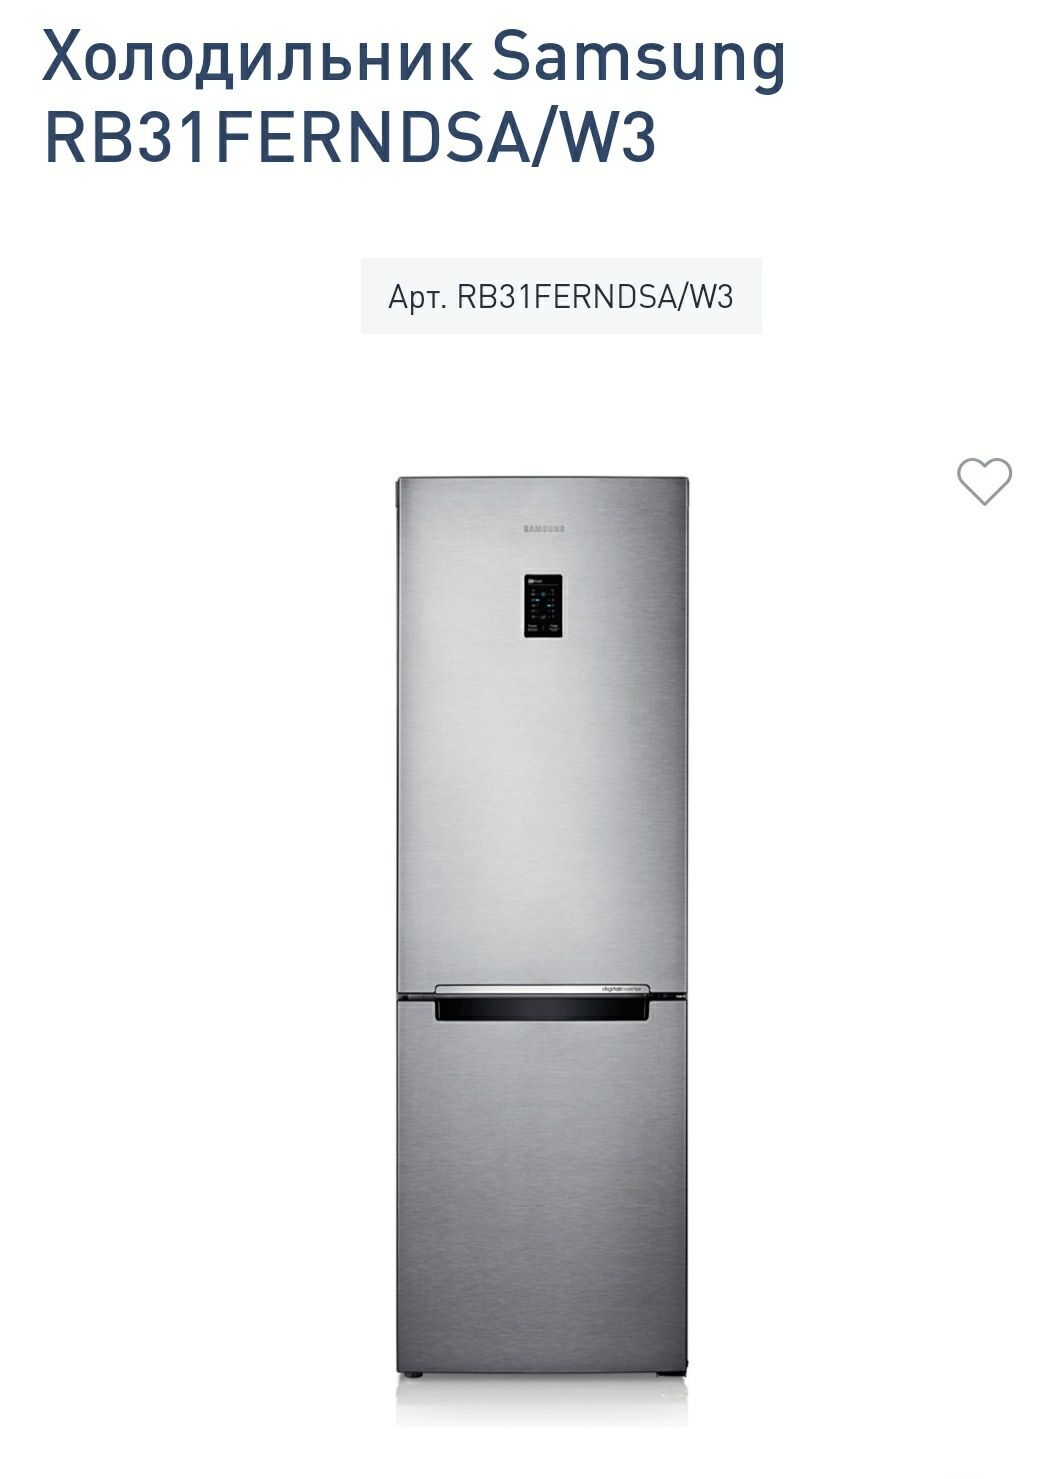 Холодильники Samsung 29,31,37 FERNDSA  Доставка по городу бесплатно